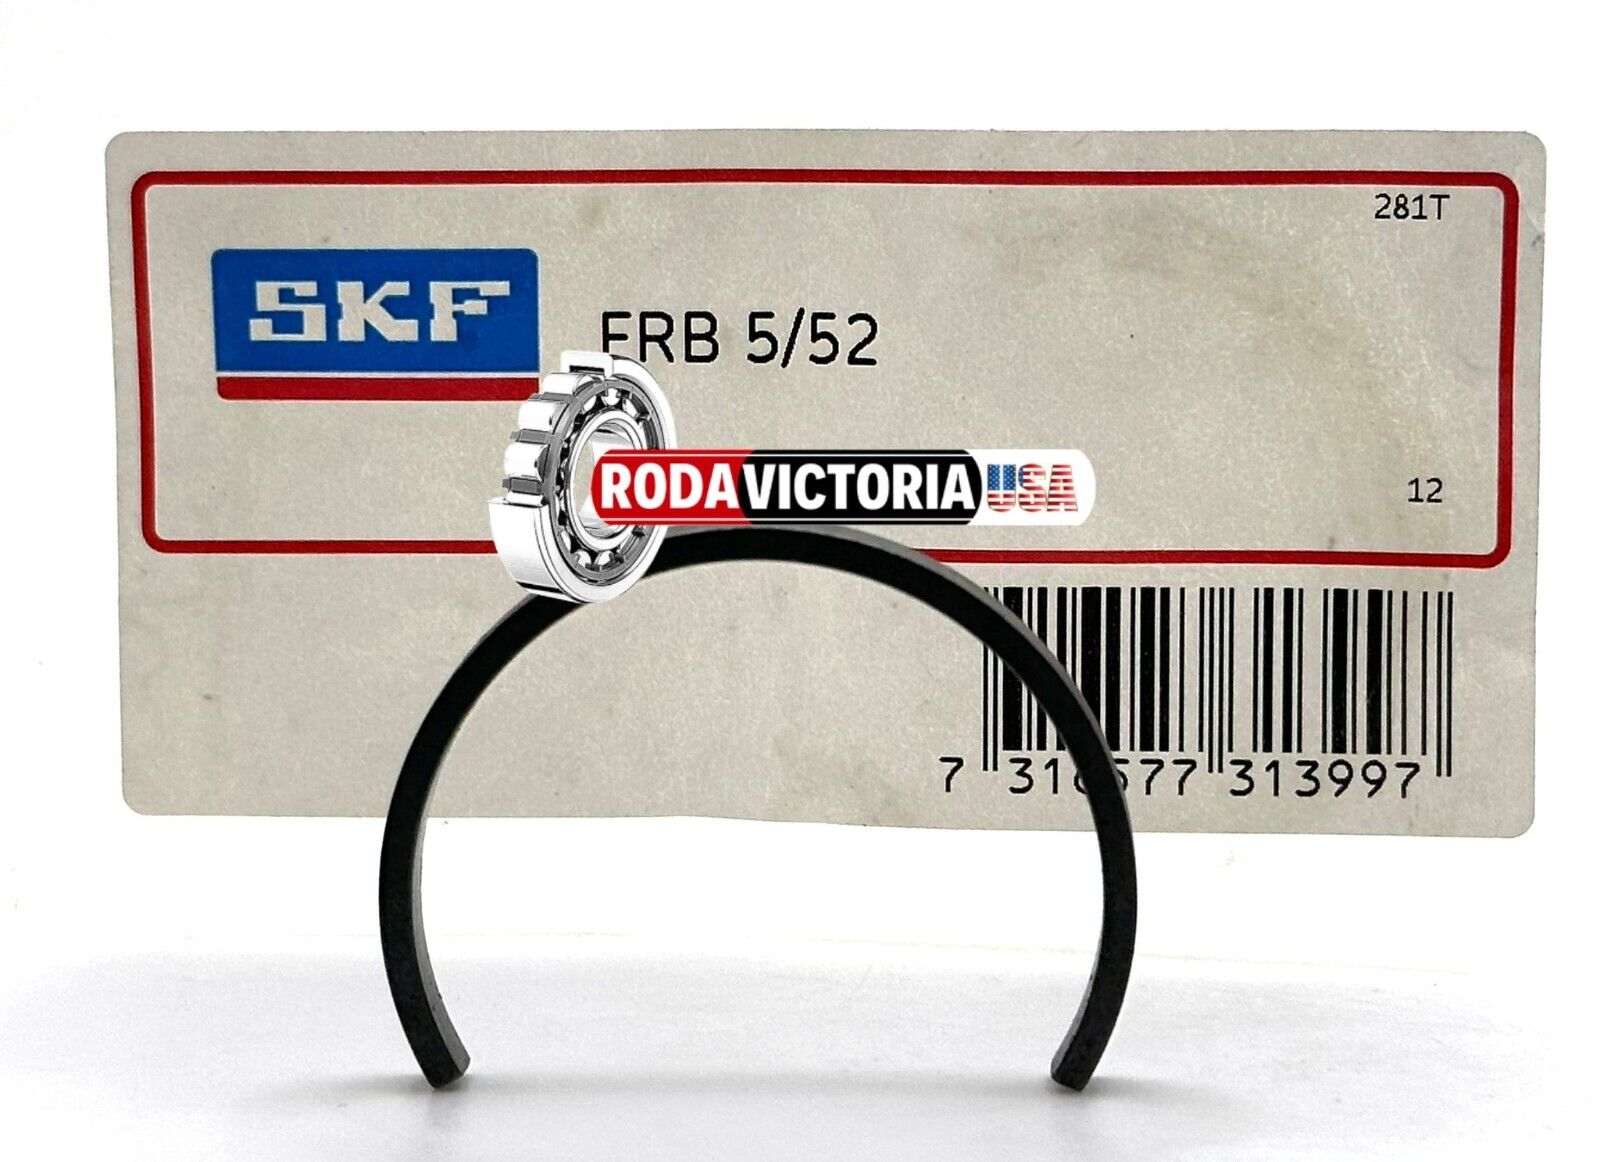 SKF - Locating (stabilizing) Ring 10 x 130 mm